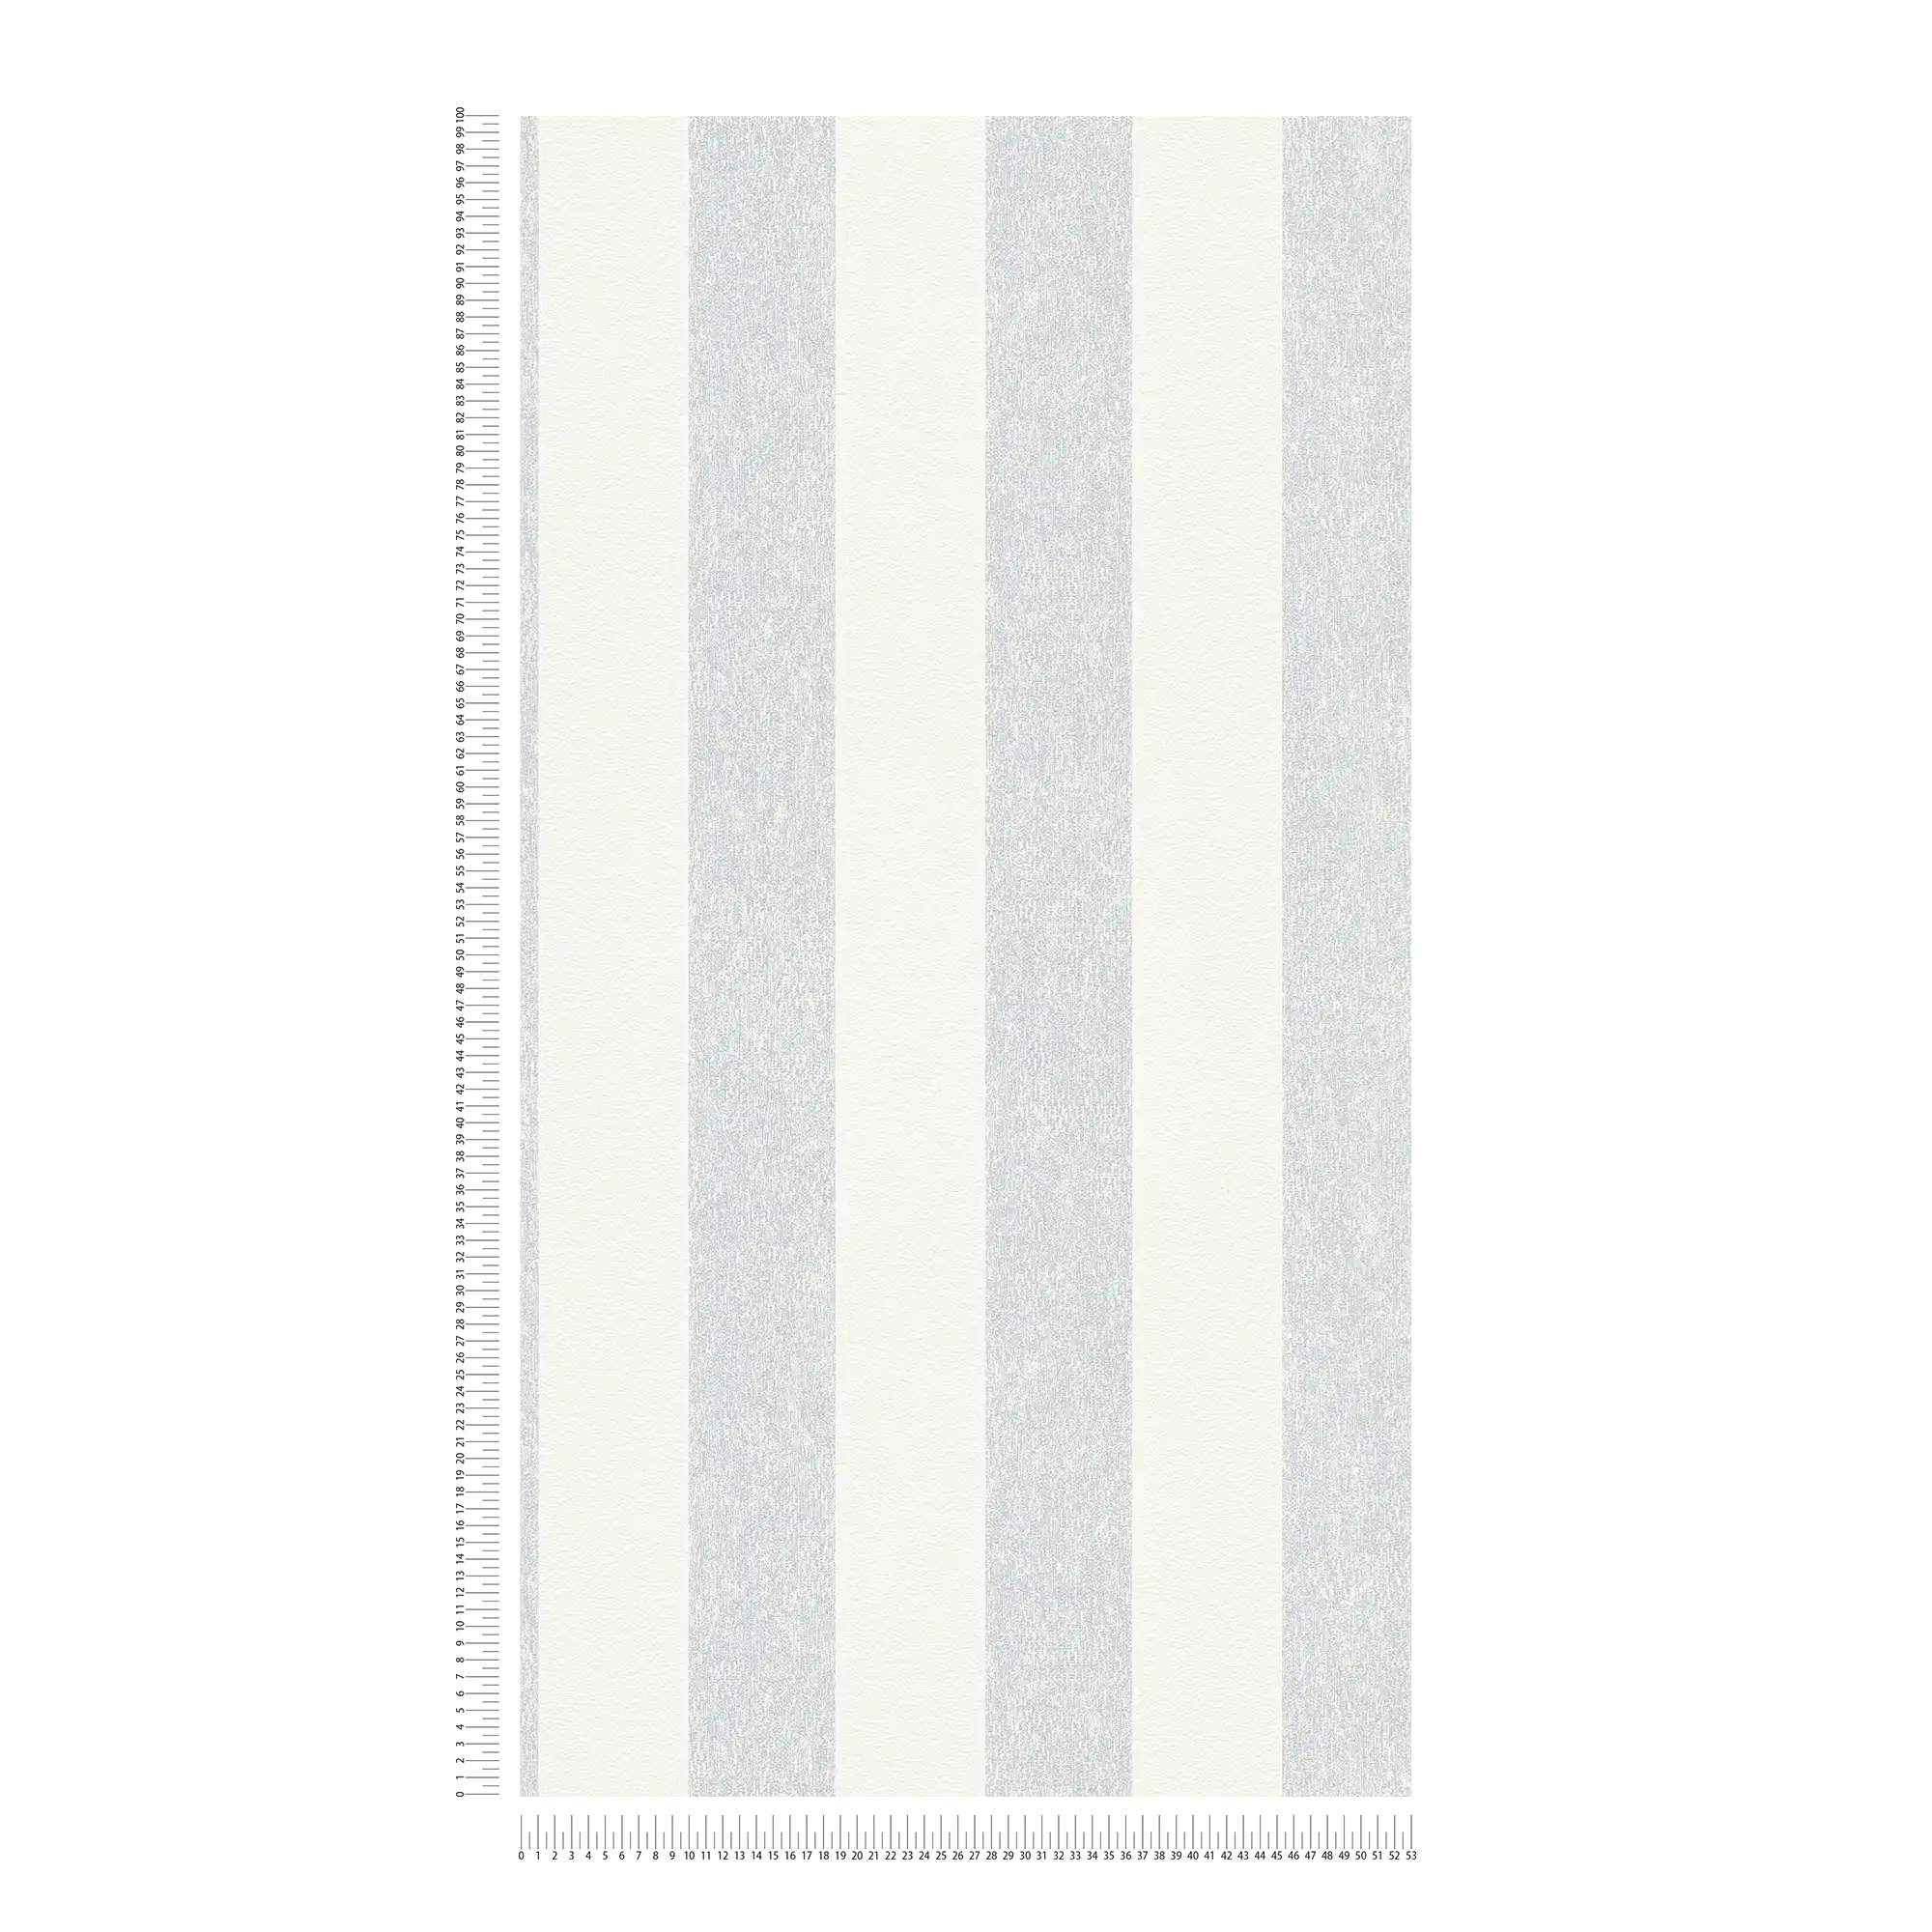             Gestreept behang met structuur optiek mat - grijs, wit
        